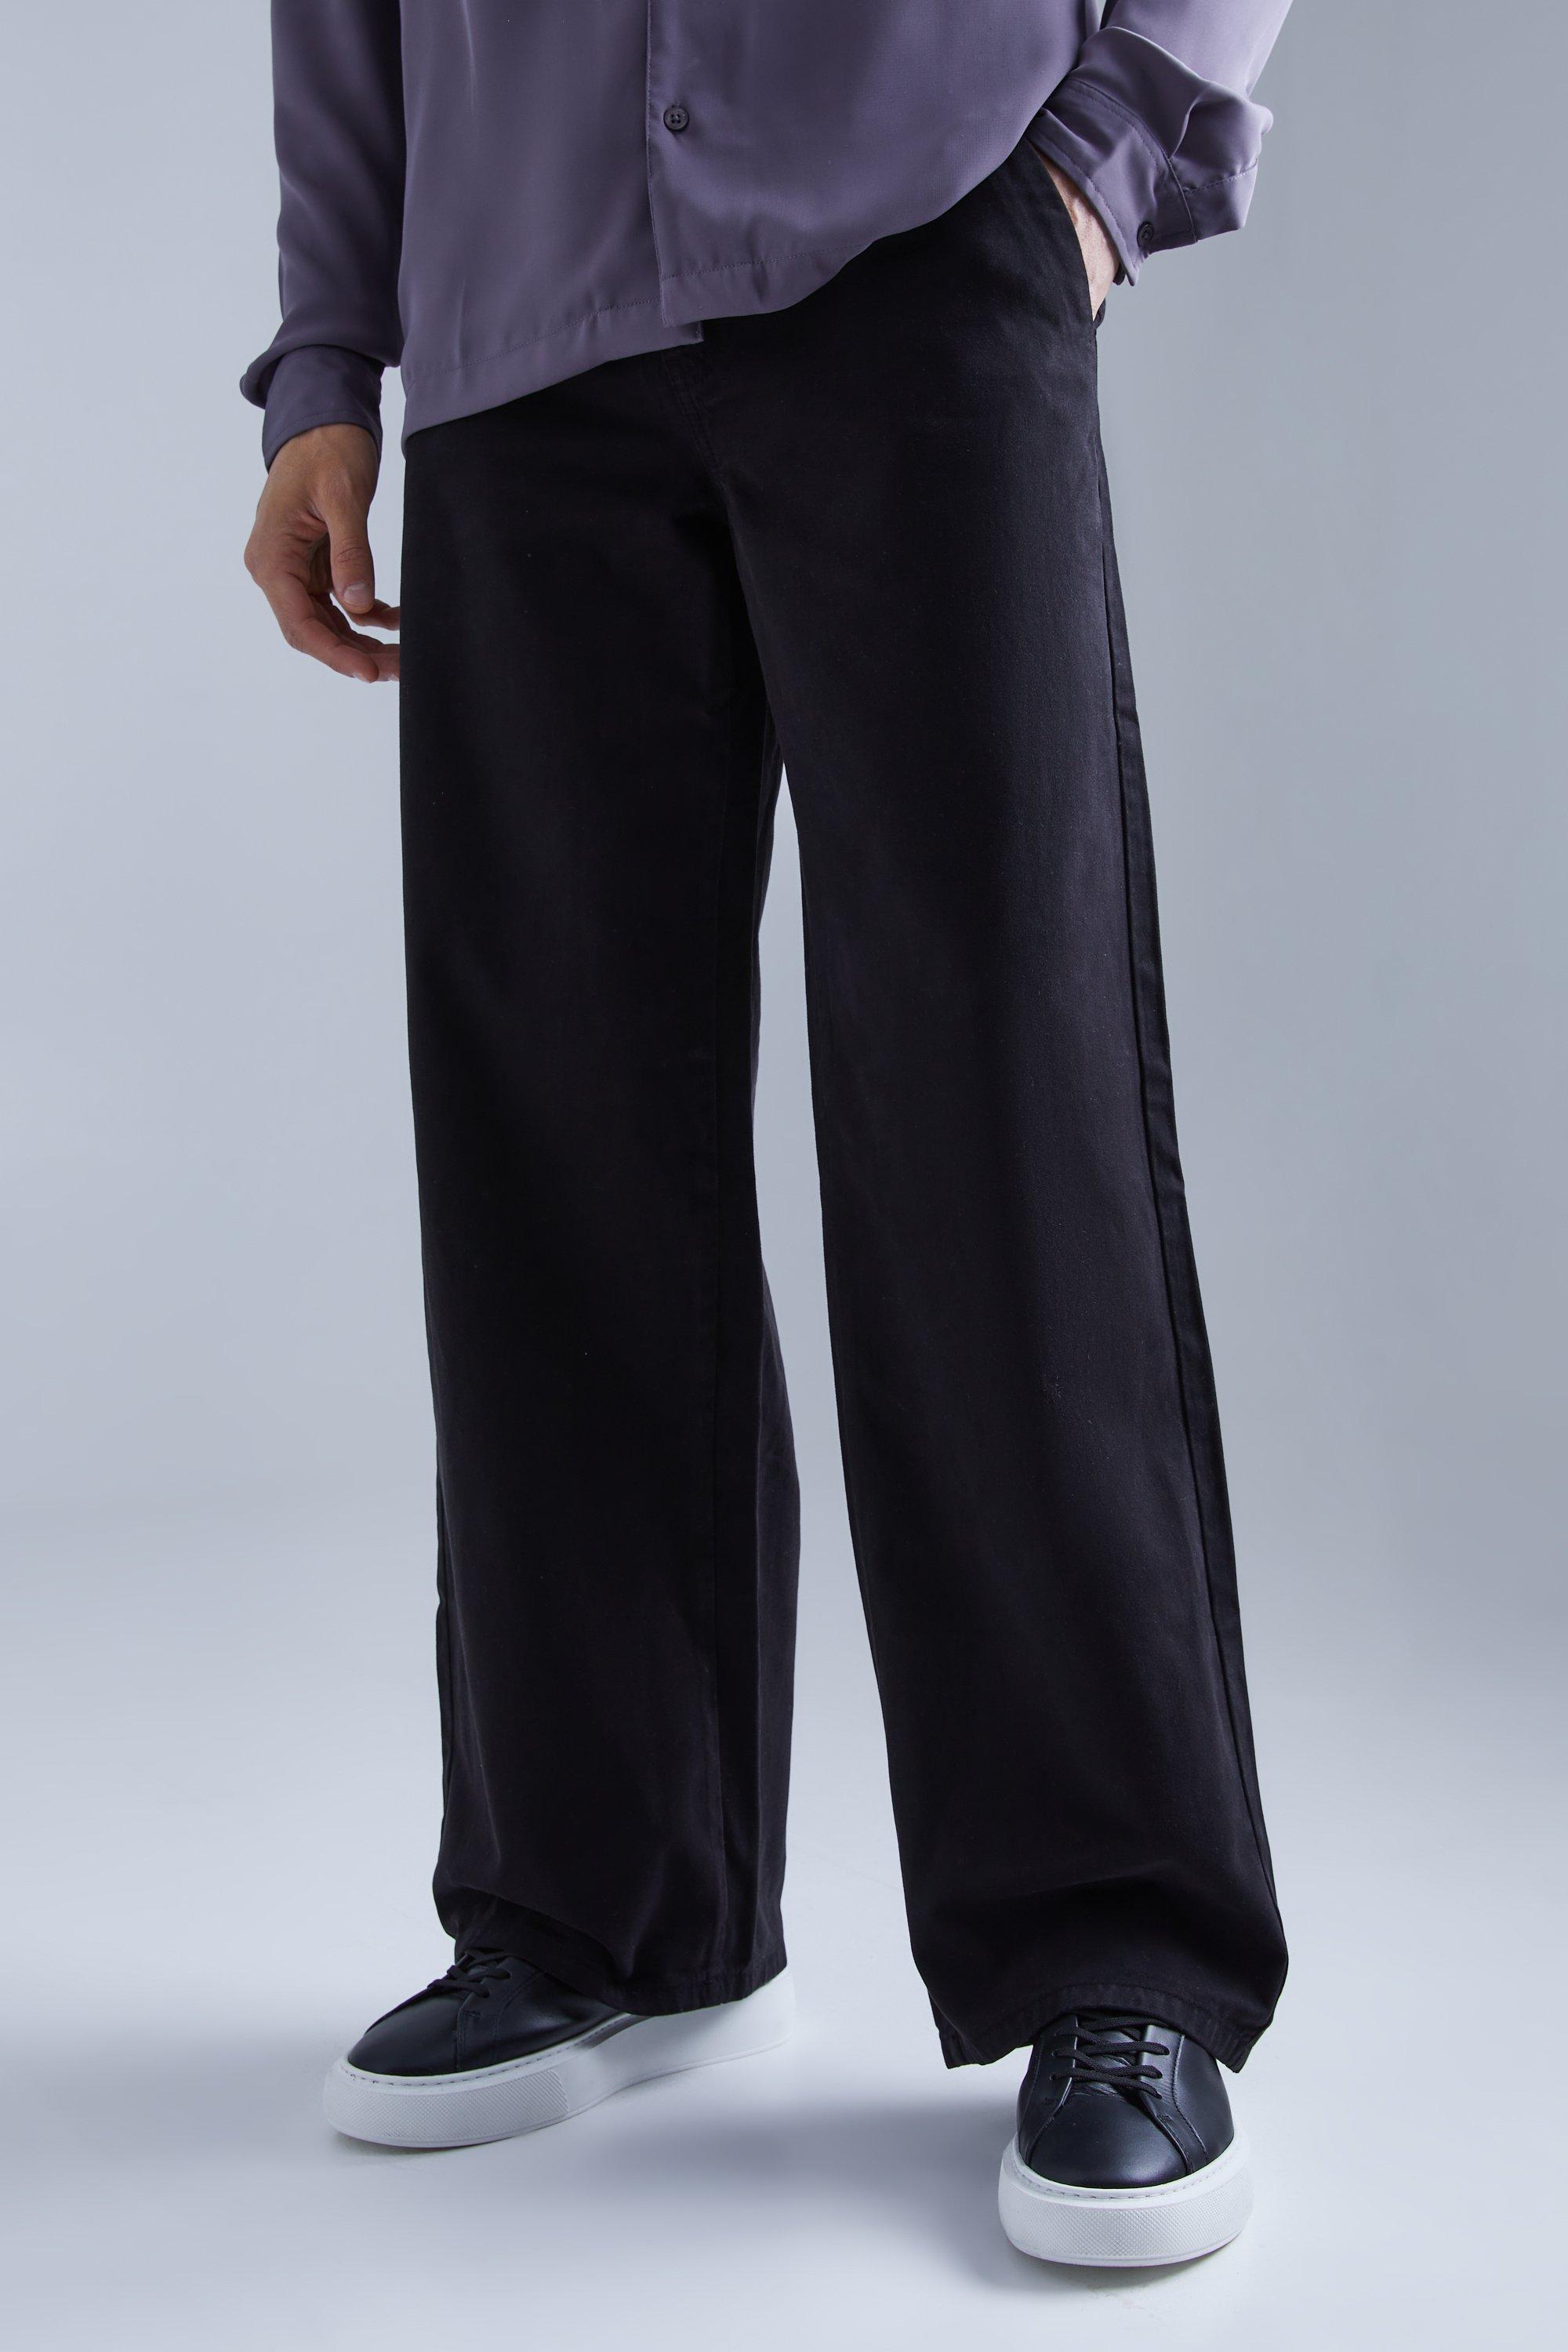 pantalon chino large homme - noir - 28, noir